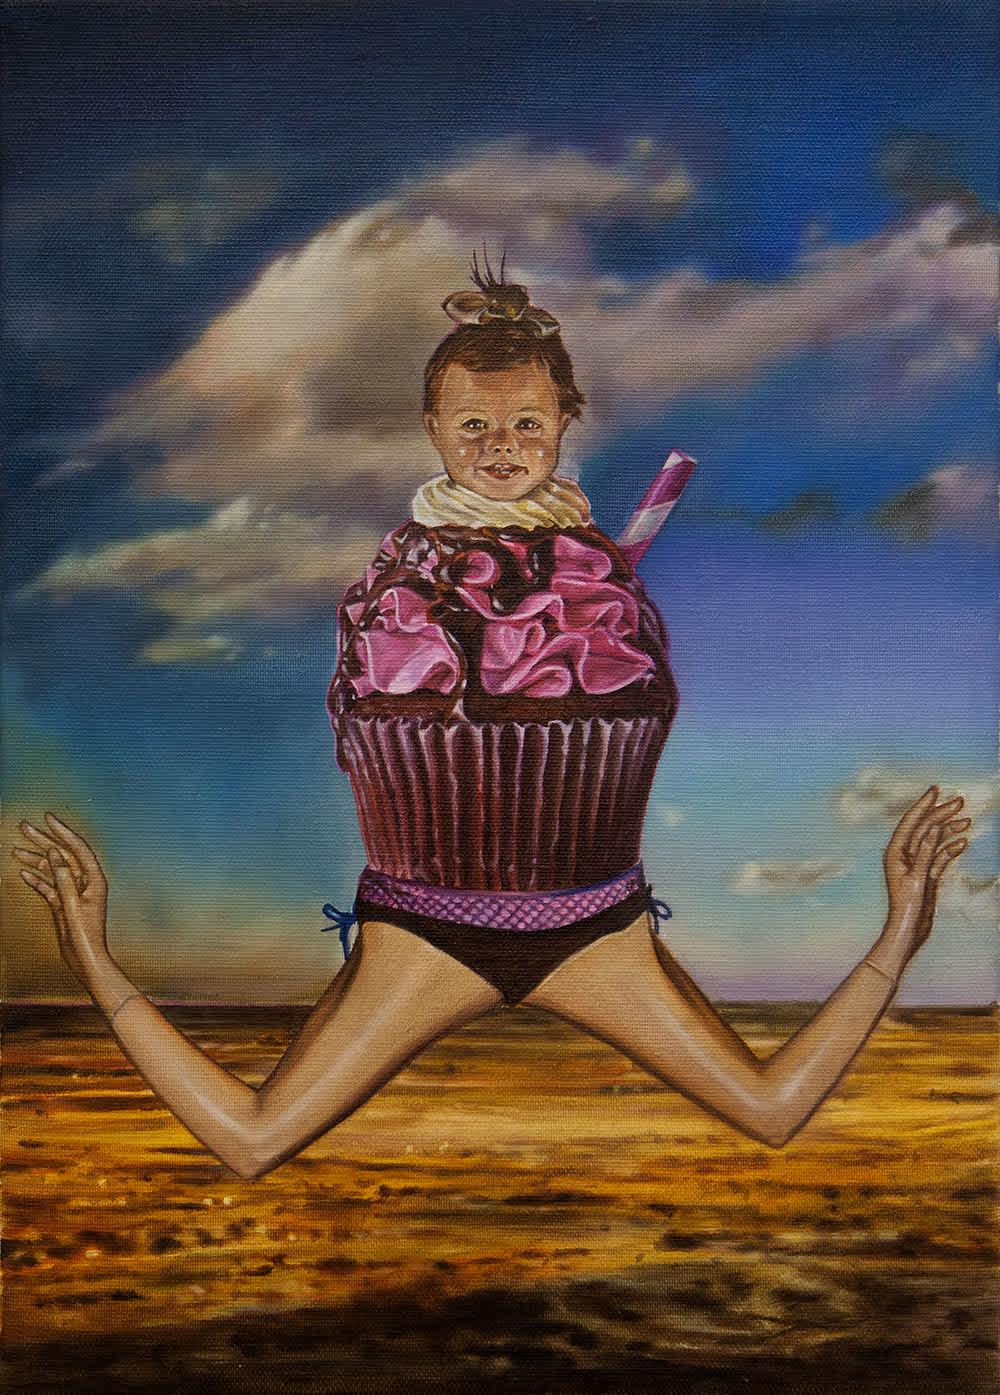 cupcake-arms-baby-sky-painting